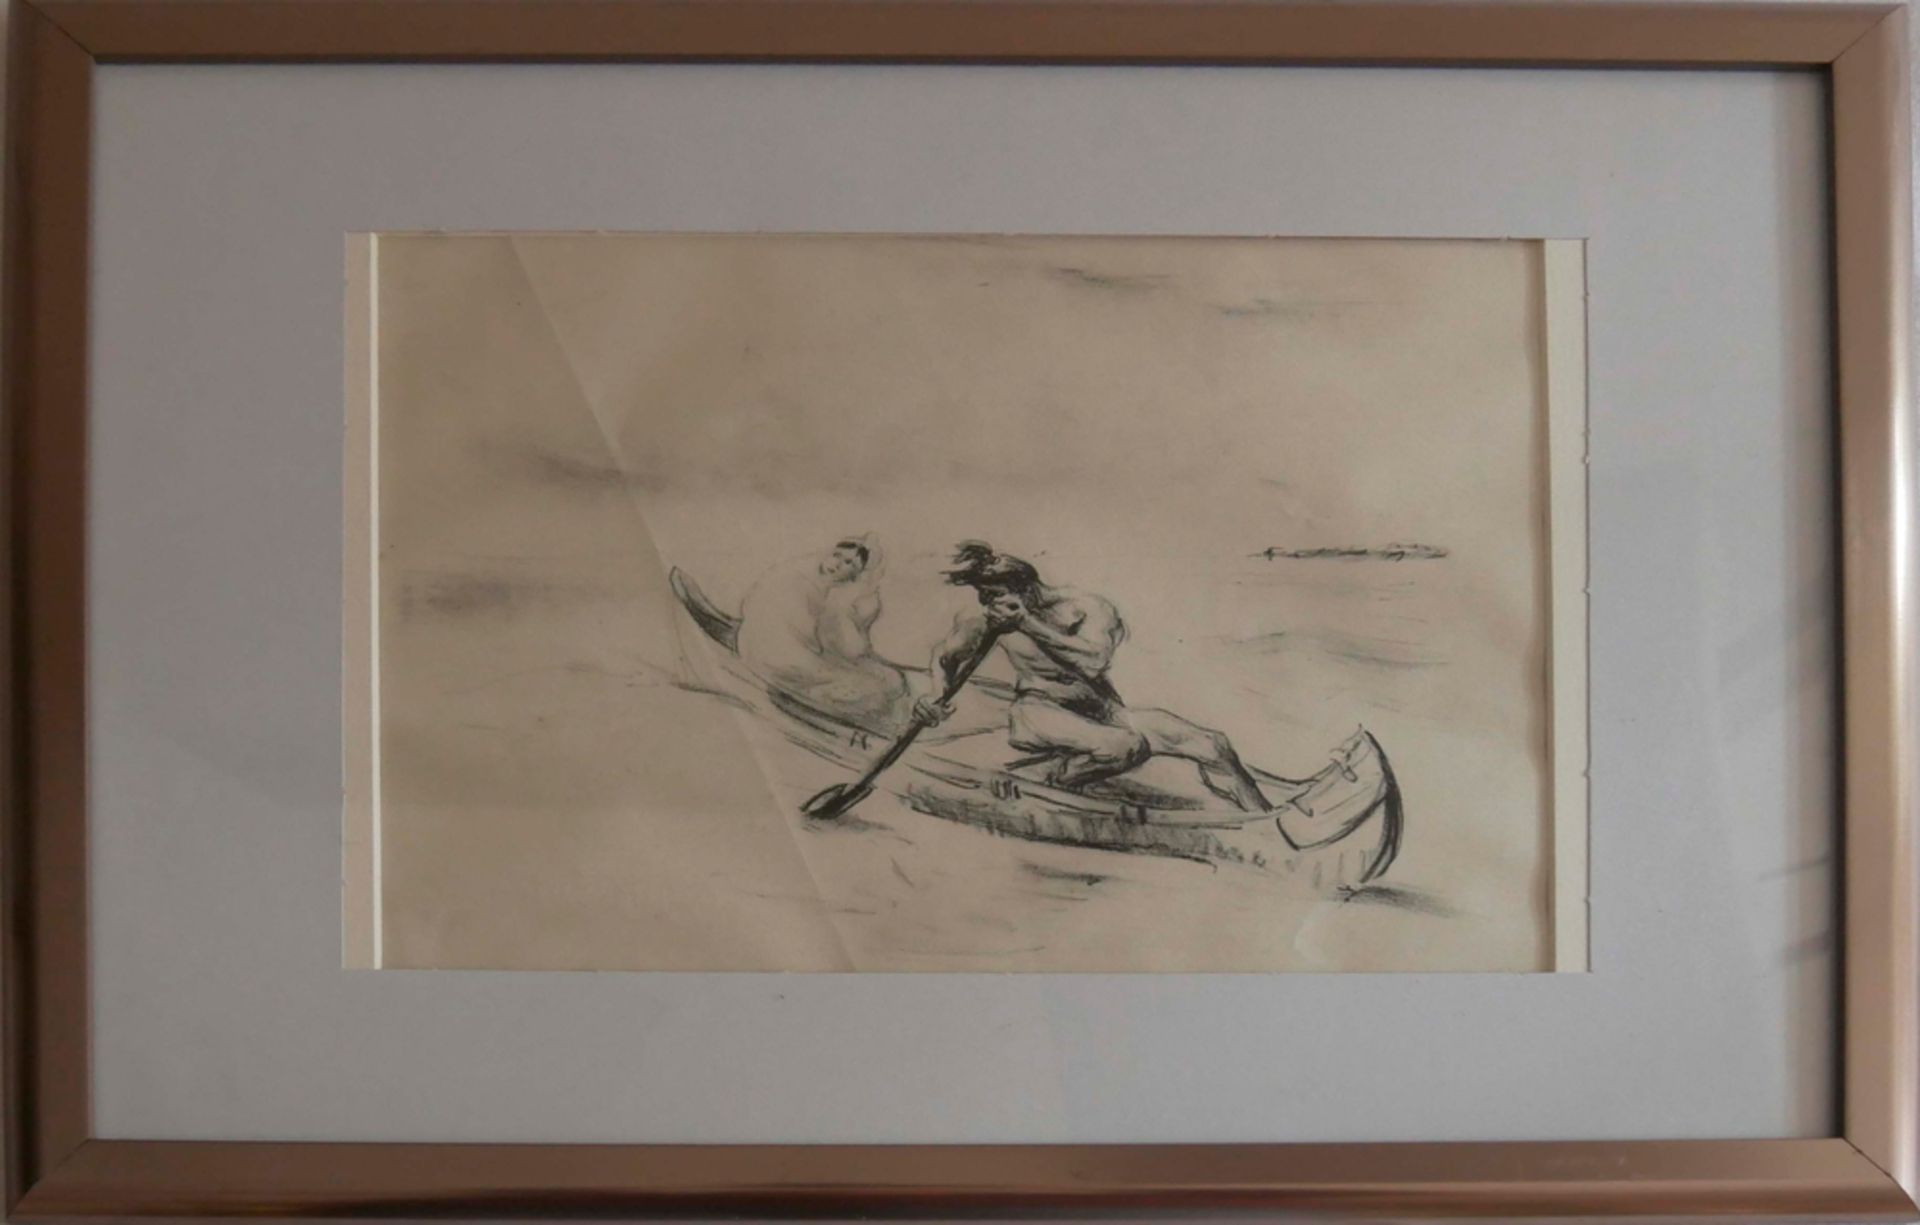 Max SLEVOGT (1868-1932). Radierung "Mann in Boot", hinter Glas gerahmt. Gesamtmaße: Höhe ca. 33